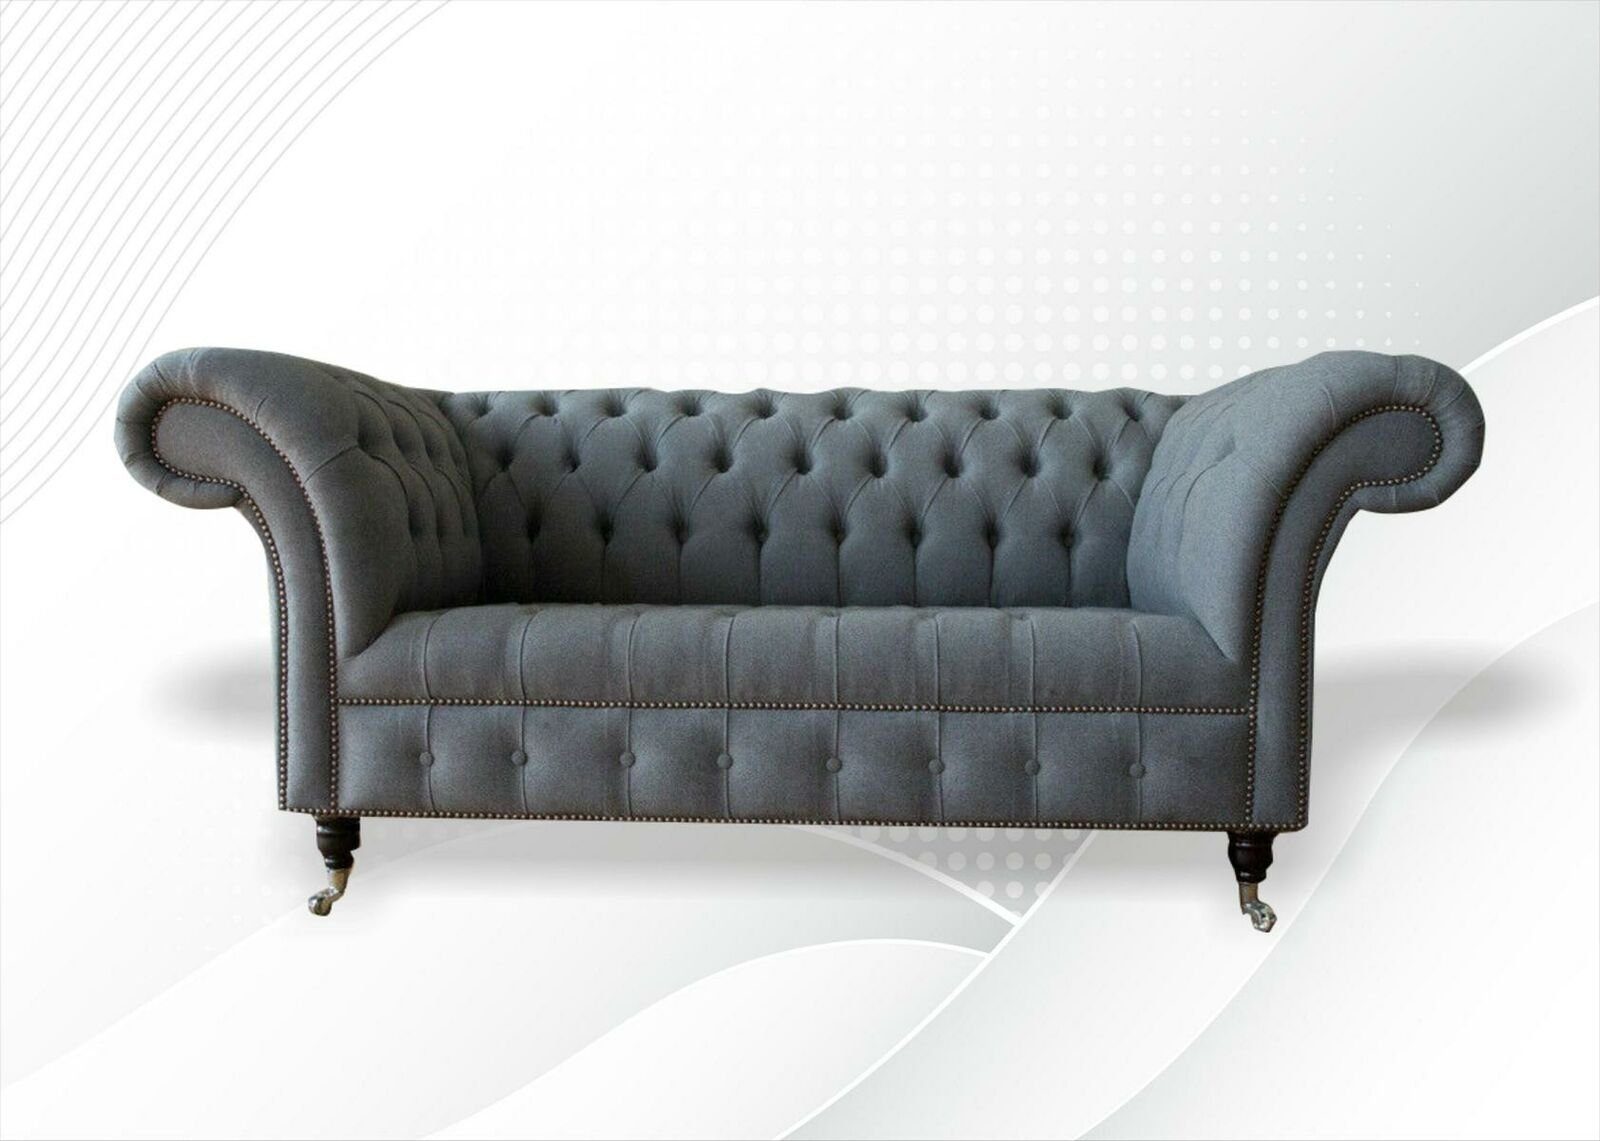 JVmoebel Chesterfield-Sofa Stilvoller Chesterfield 2 Sitzer Wohnzimmer Modern Grau Neu, Made in Europe